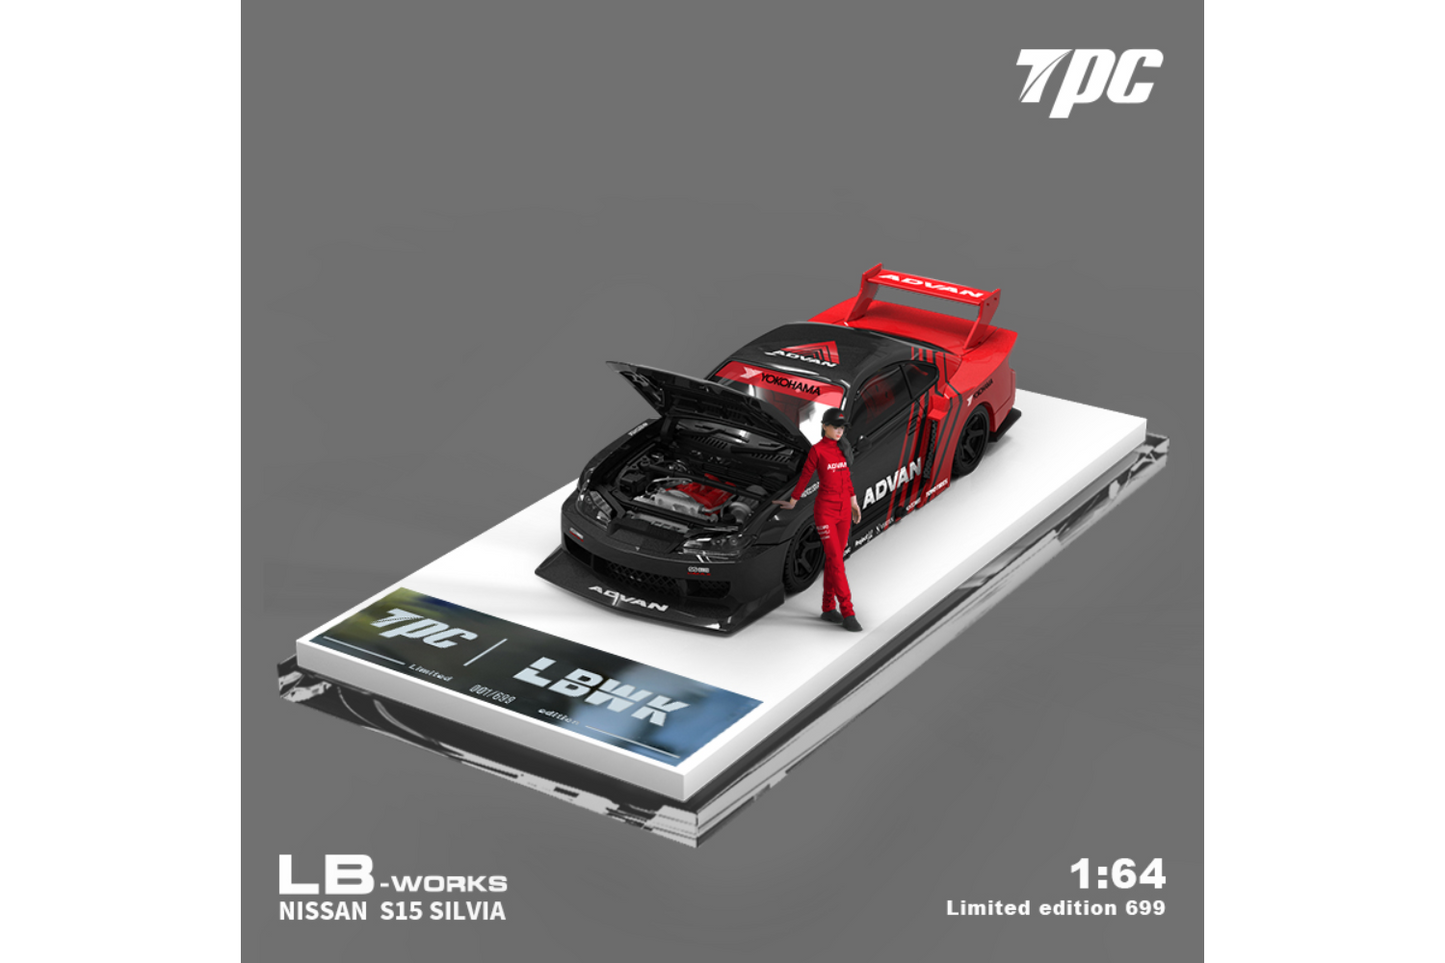 TPC 1/64 LB-Super Silhouette Nissan Silvia S15 in Advan Livery